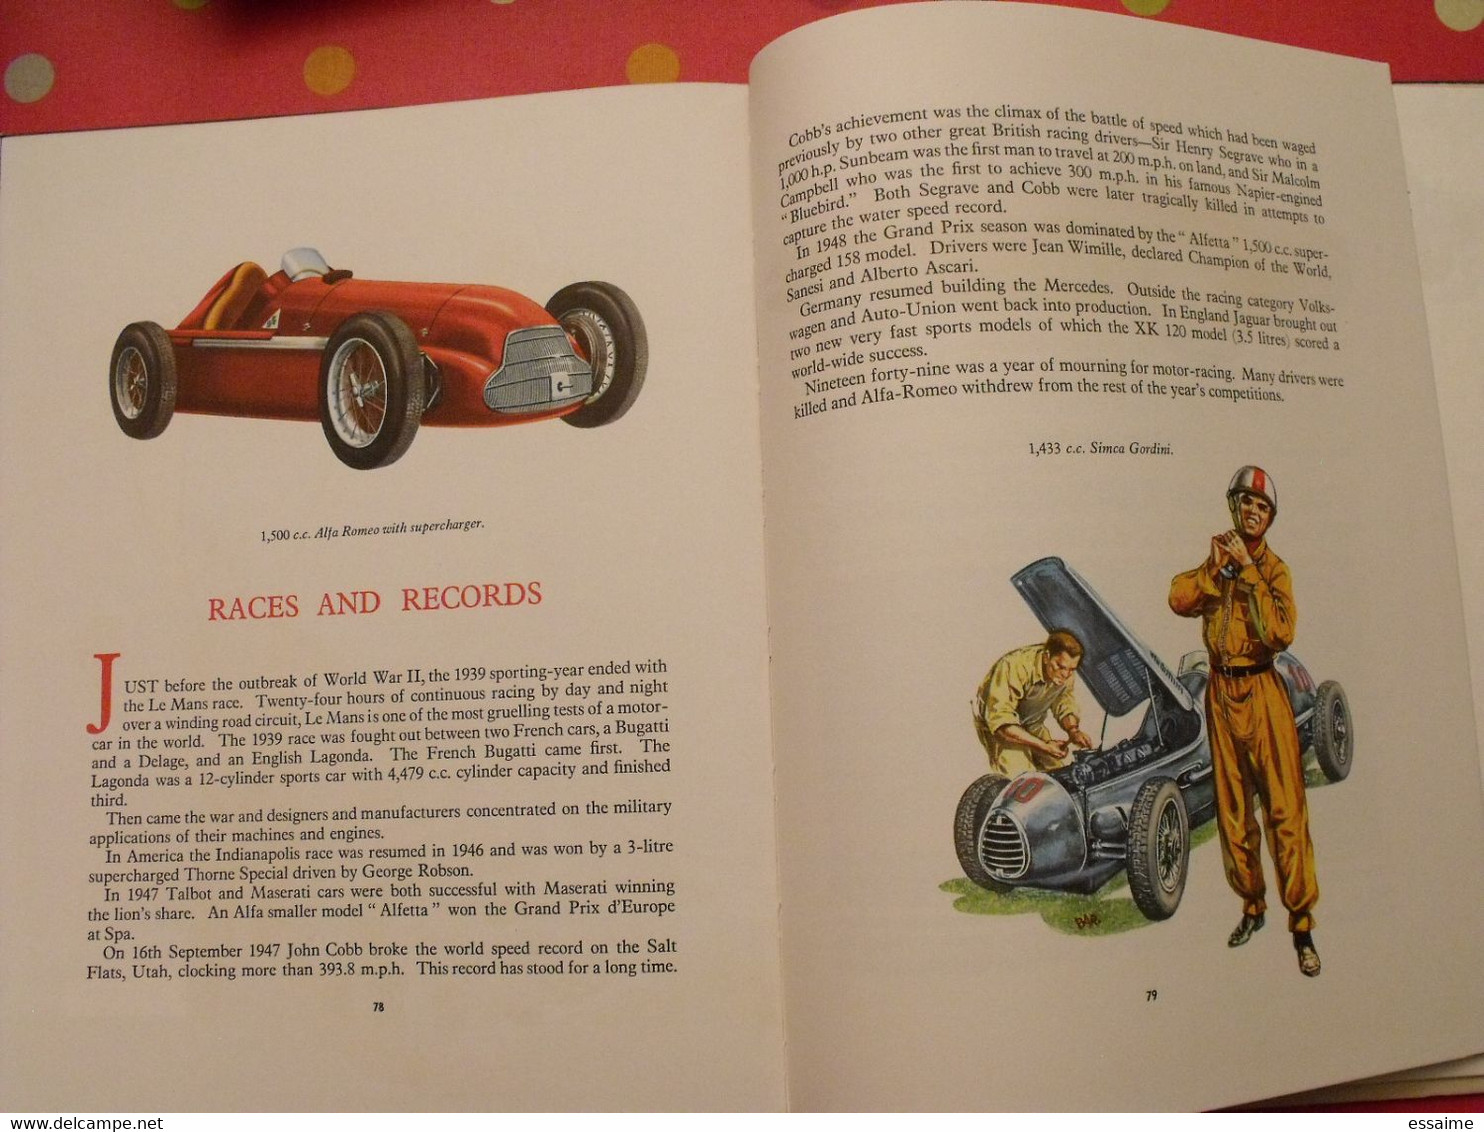 the story of cars. oldbourne press 1961. histoire de l'automobile. bien illustré